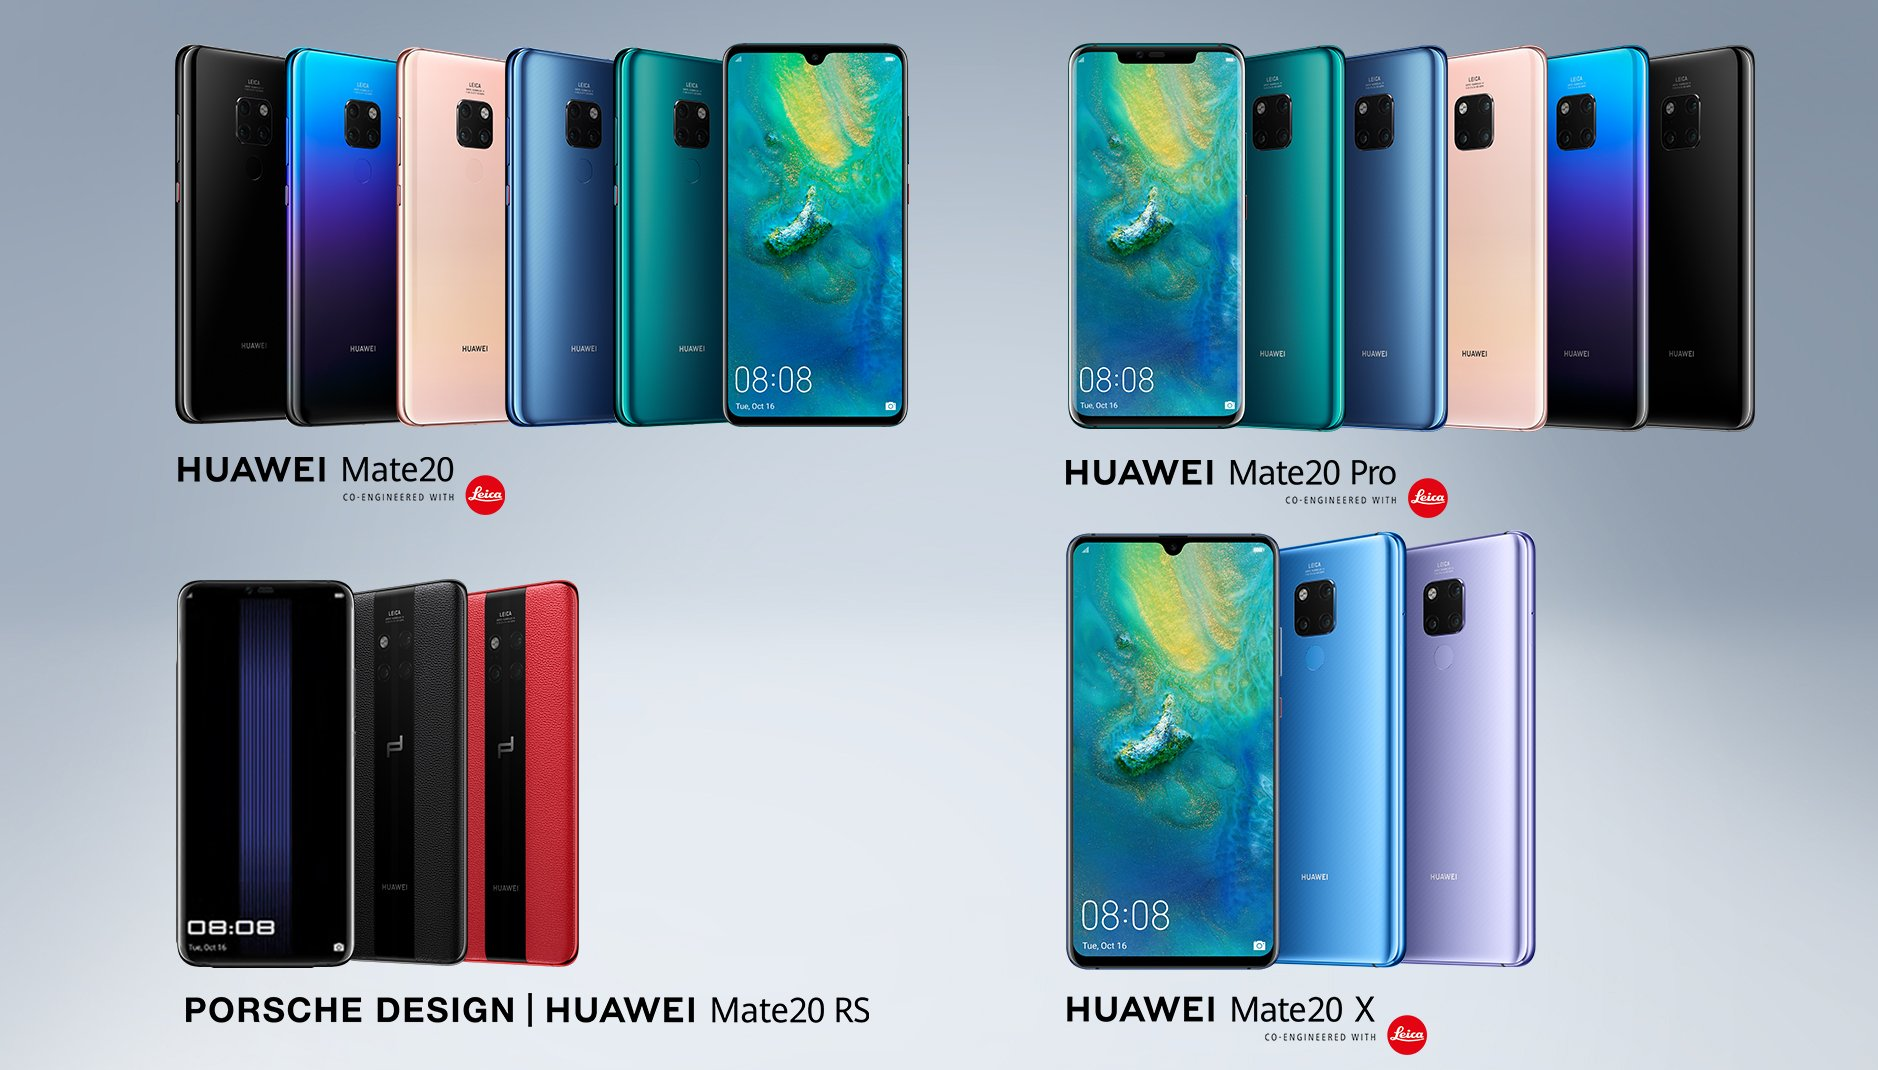 Това е новата серия смартфони на Huawei - Mate 20